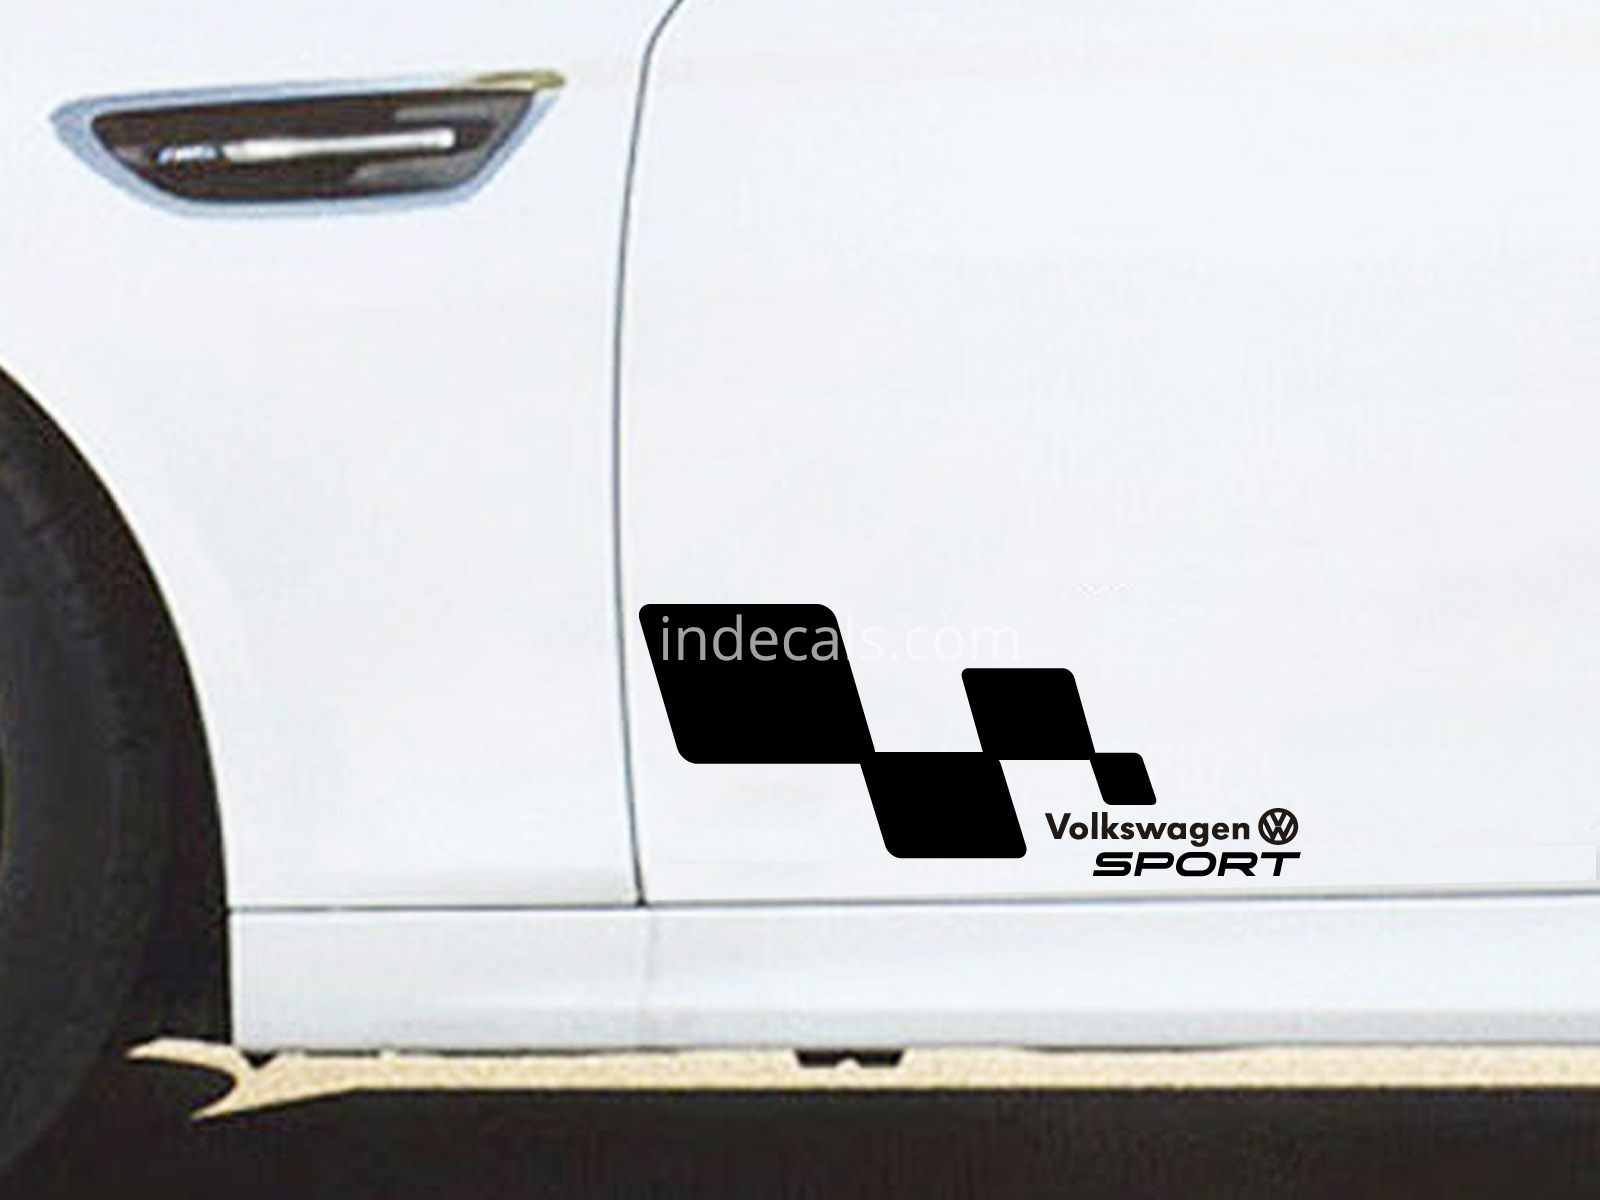 2 x Volkswagen Racing Flag Stickers - Black